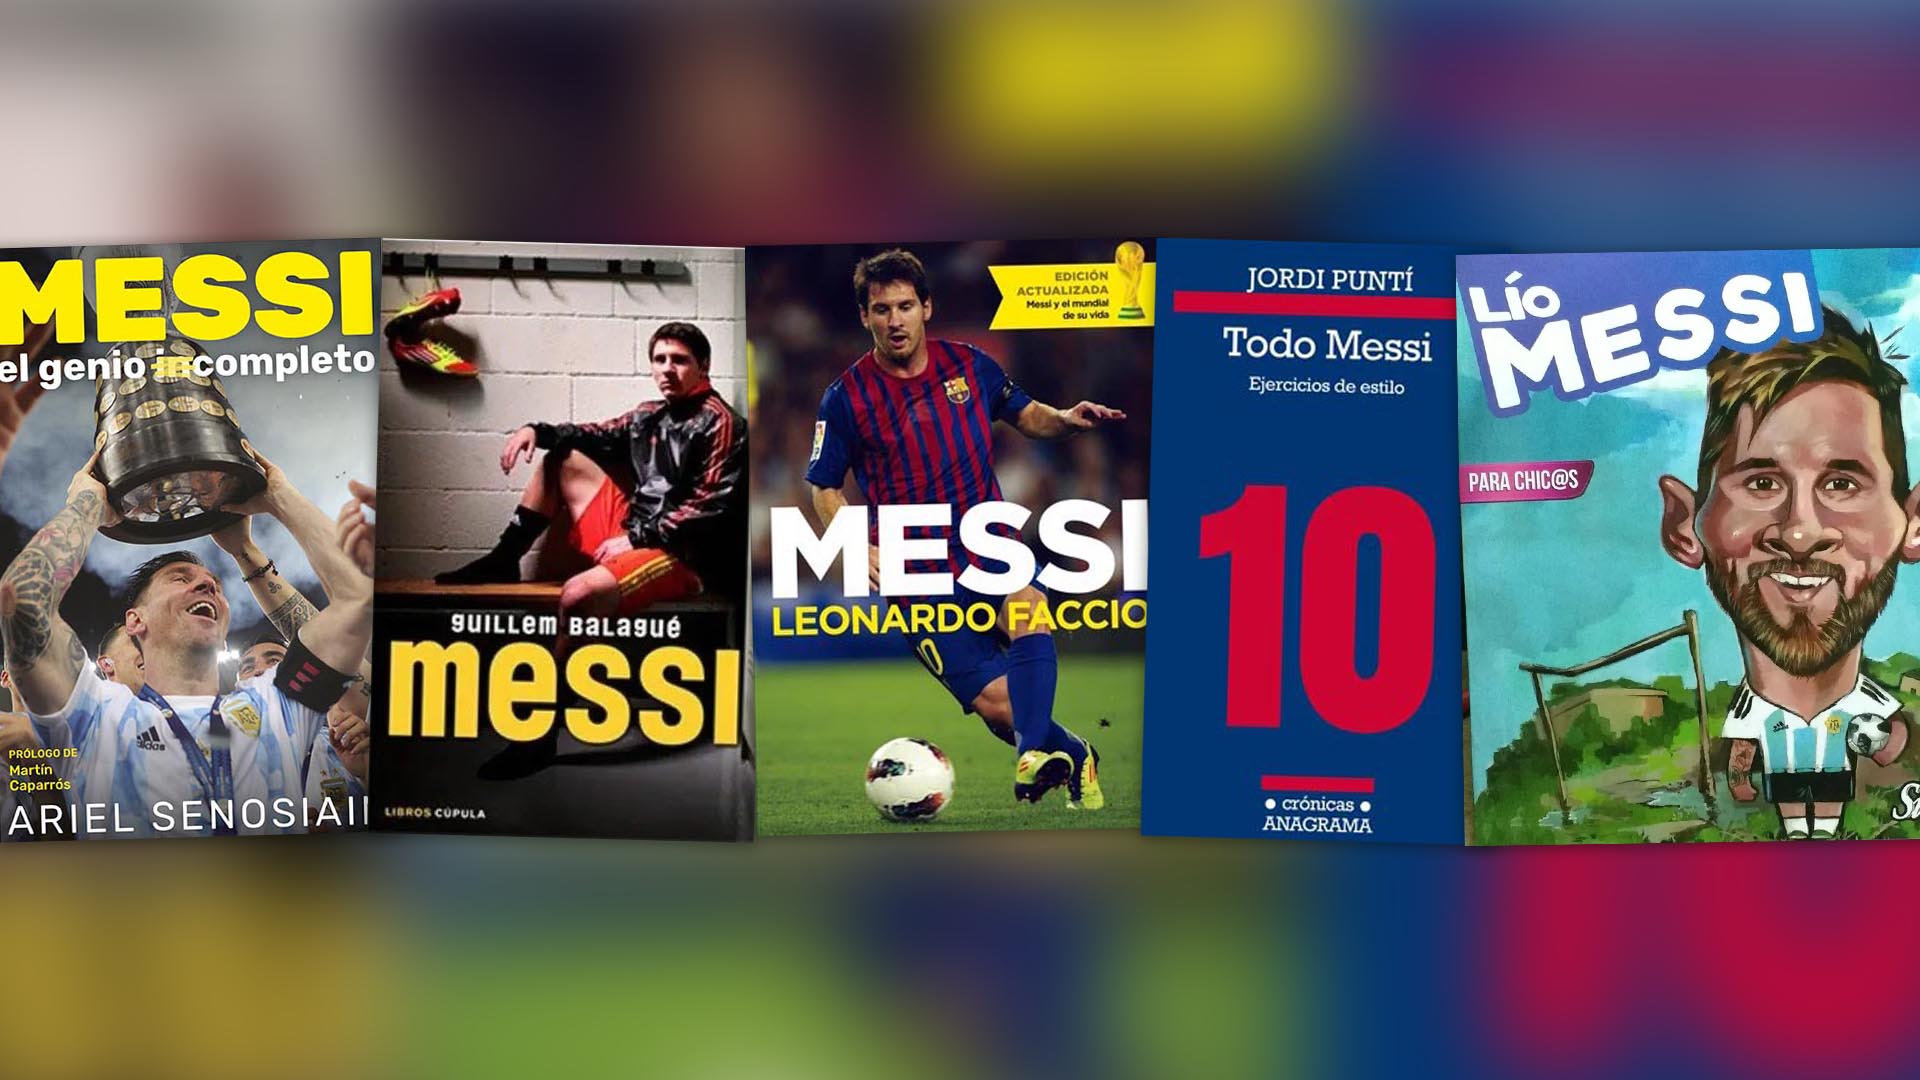 Biografías, crónicas y libros infantiles en esta selección sobre el mejor jugador de fútbol del mundo, Lio Messi.